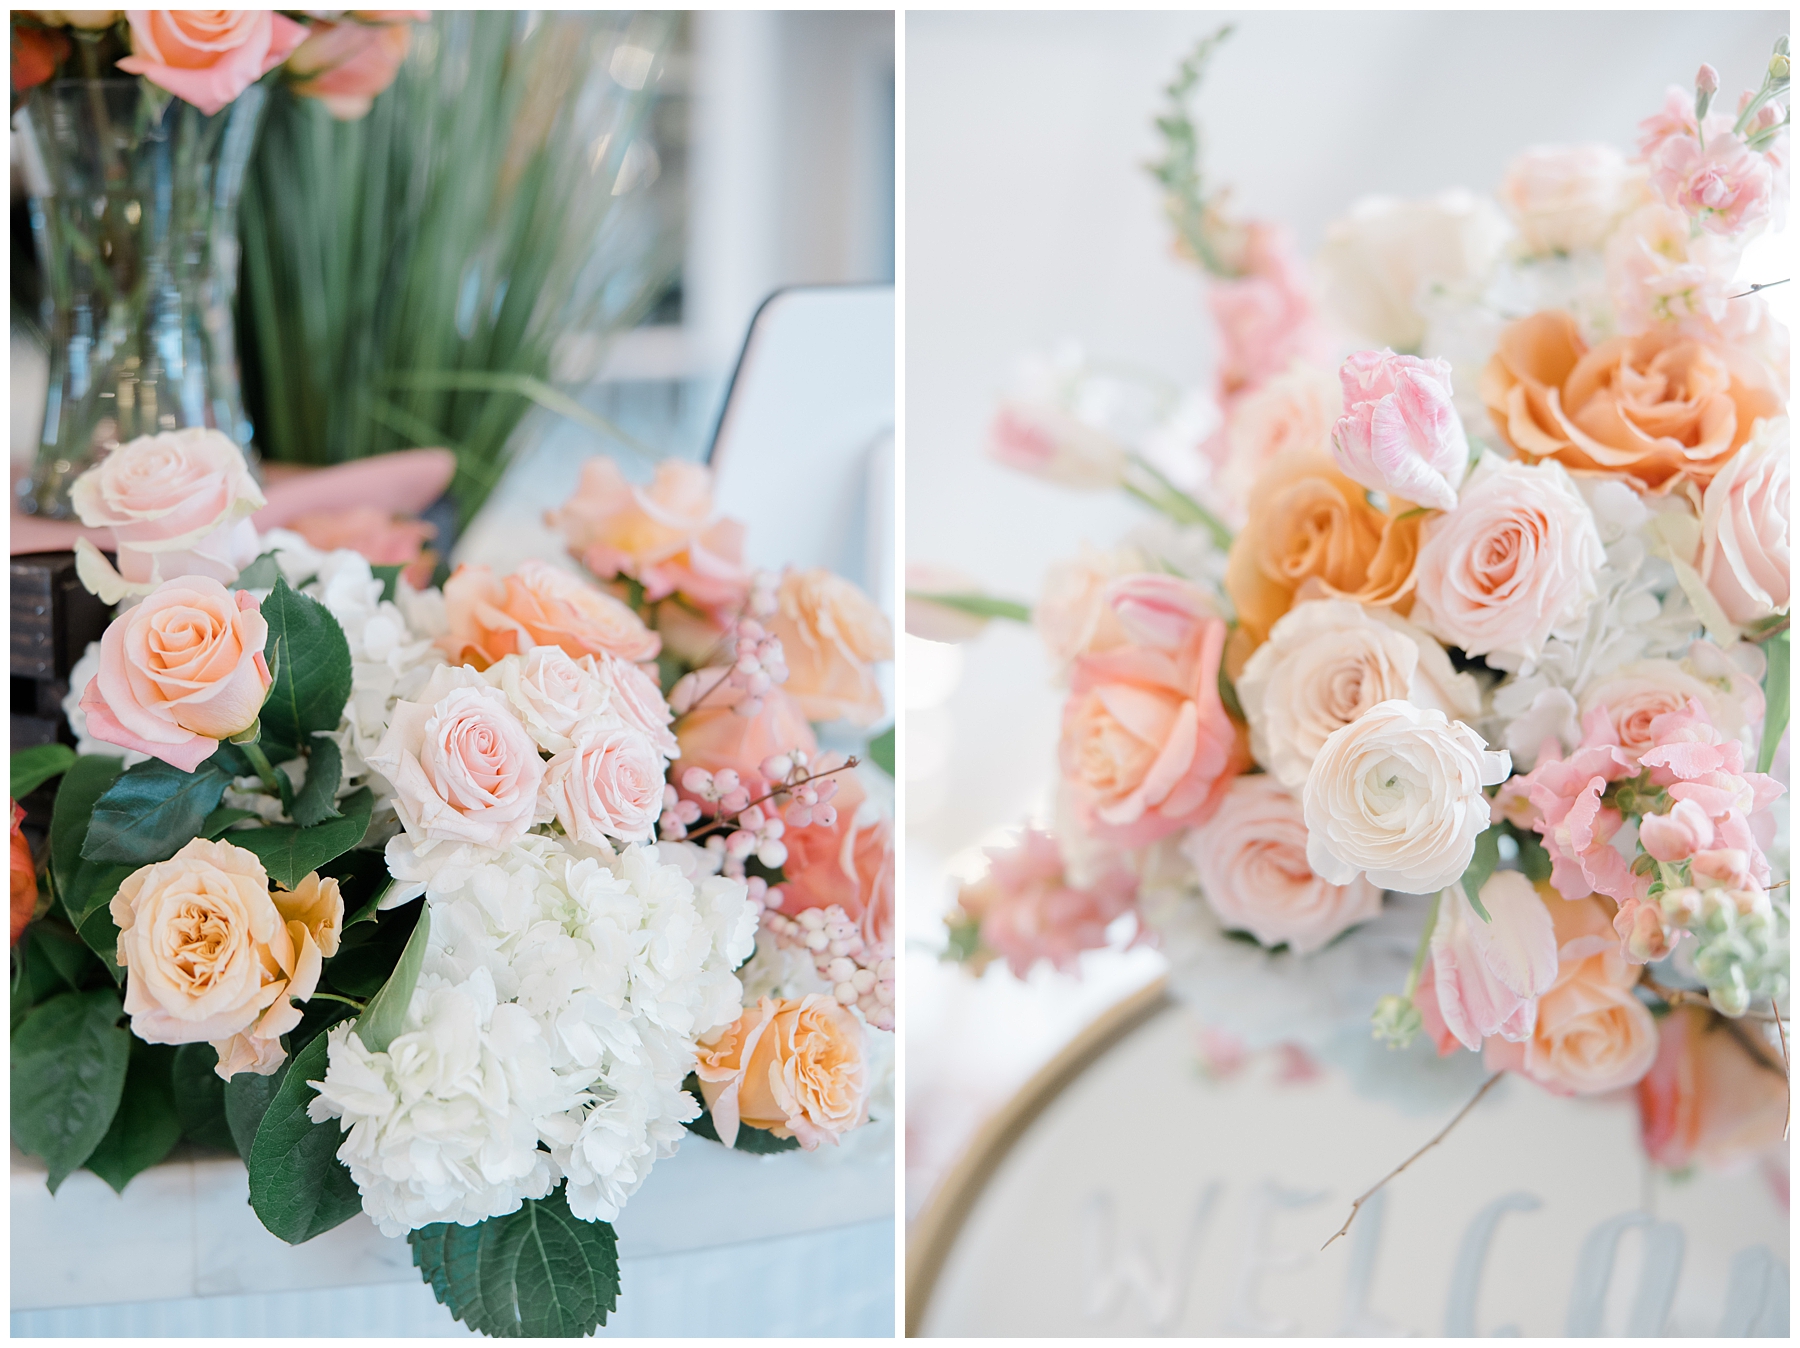 elegant white, pink, orange floral arrangements